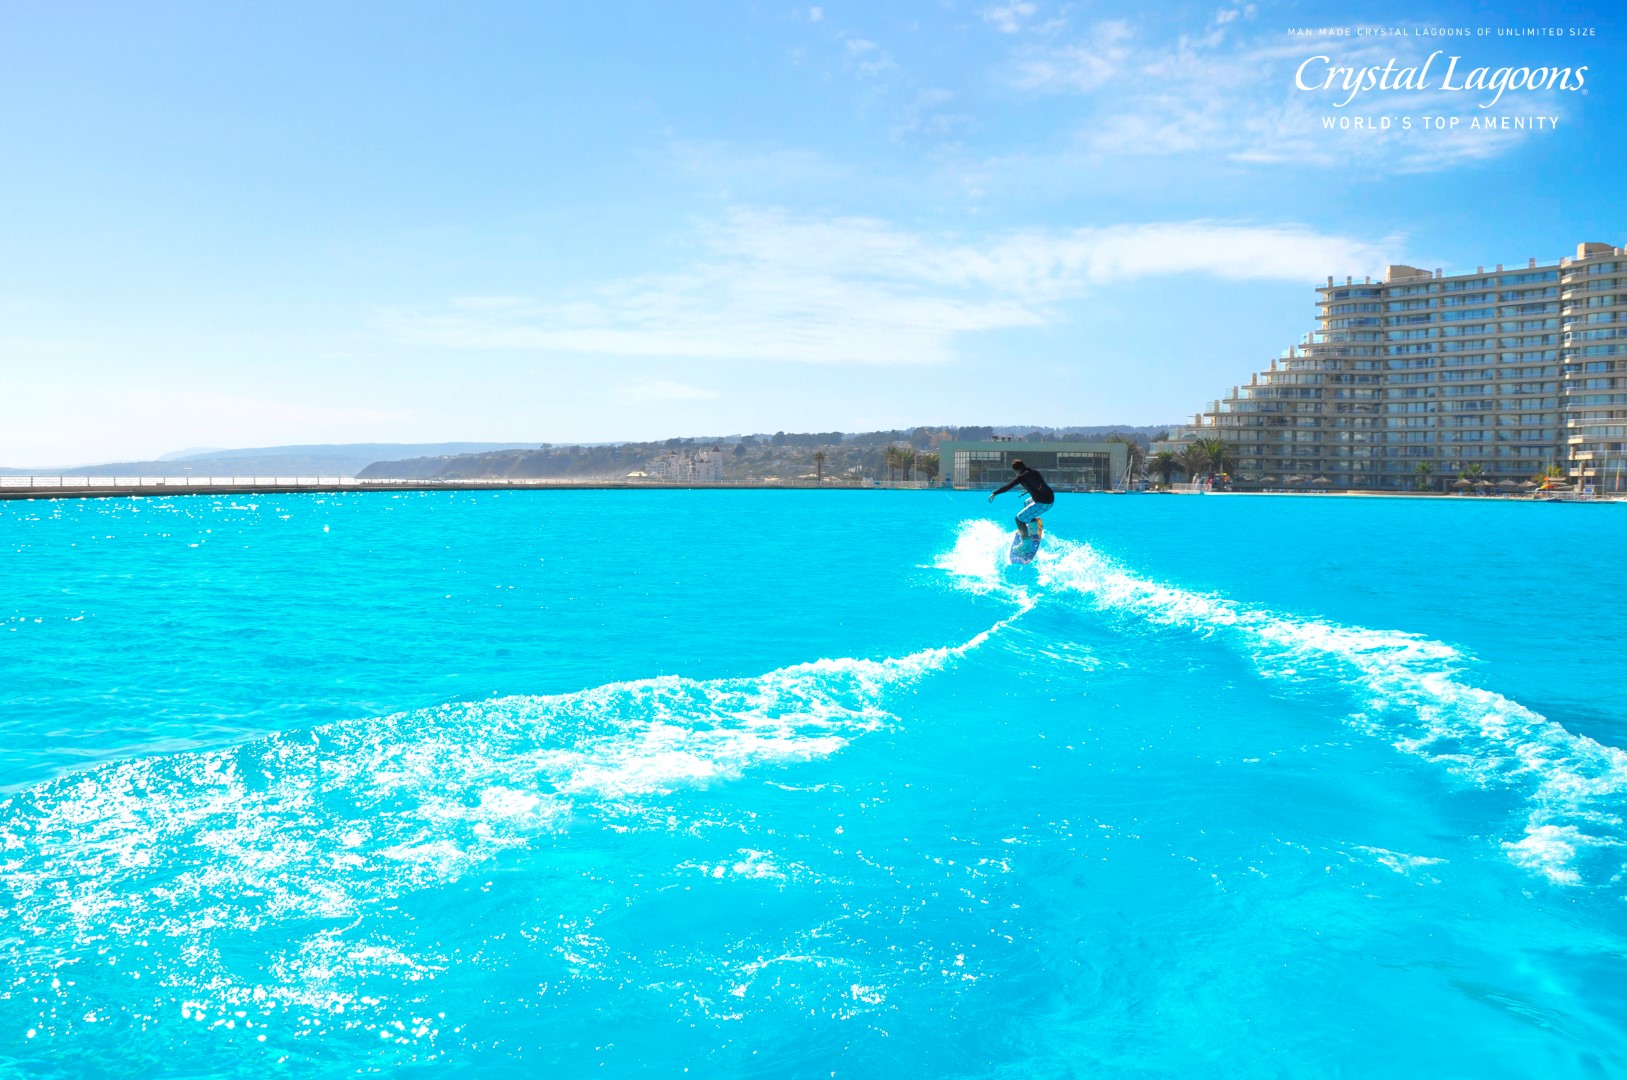 Первый бассейн в мире. Отель Кристальная Лагуна, Чили. Crystal Lagoon бассейн. Crystal Lagoon – самый большой бассейн в мире. Чили бассейн вдоль океана.